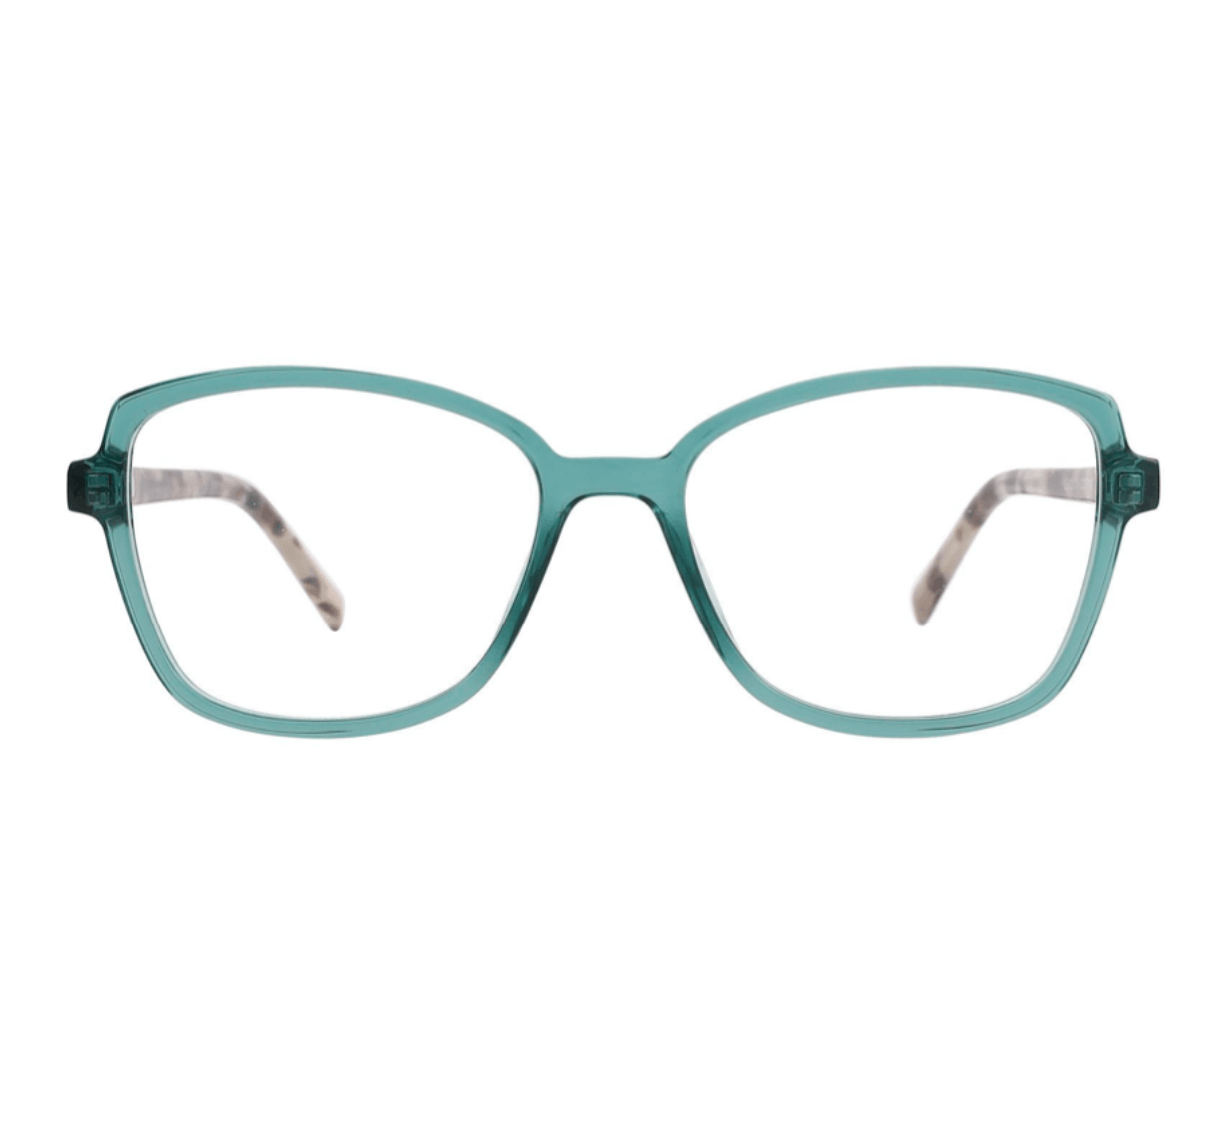 Optical frame acetate, eyeglass frame manufacturer, wholesale designer glasses frames, custom made eyeglass frames, optical glasses suppliers